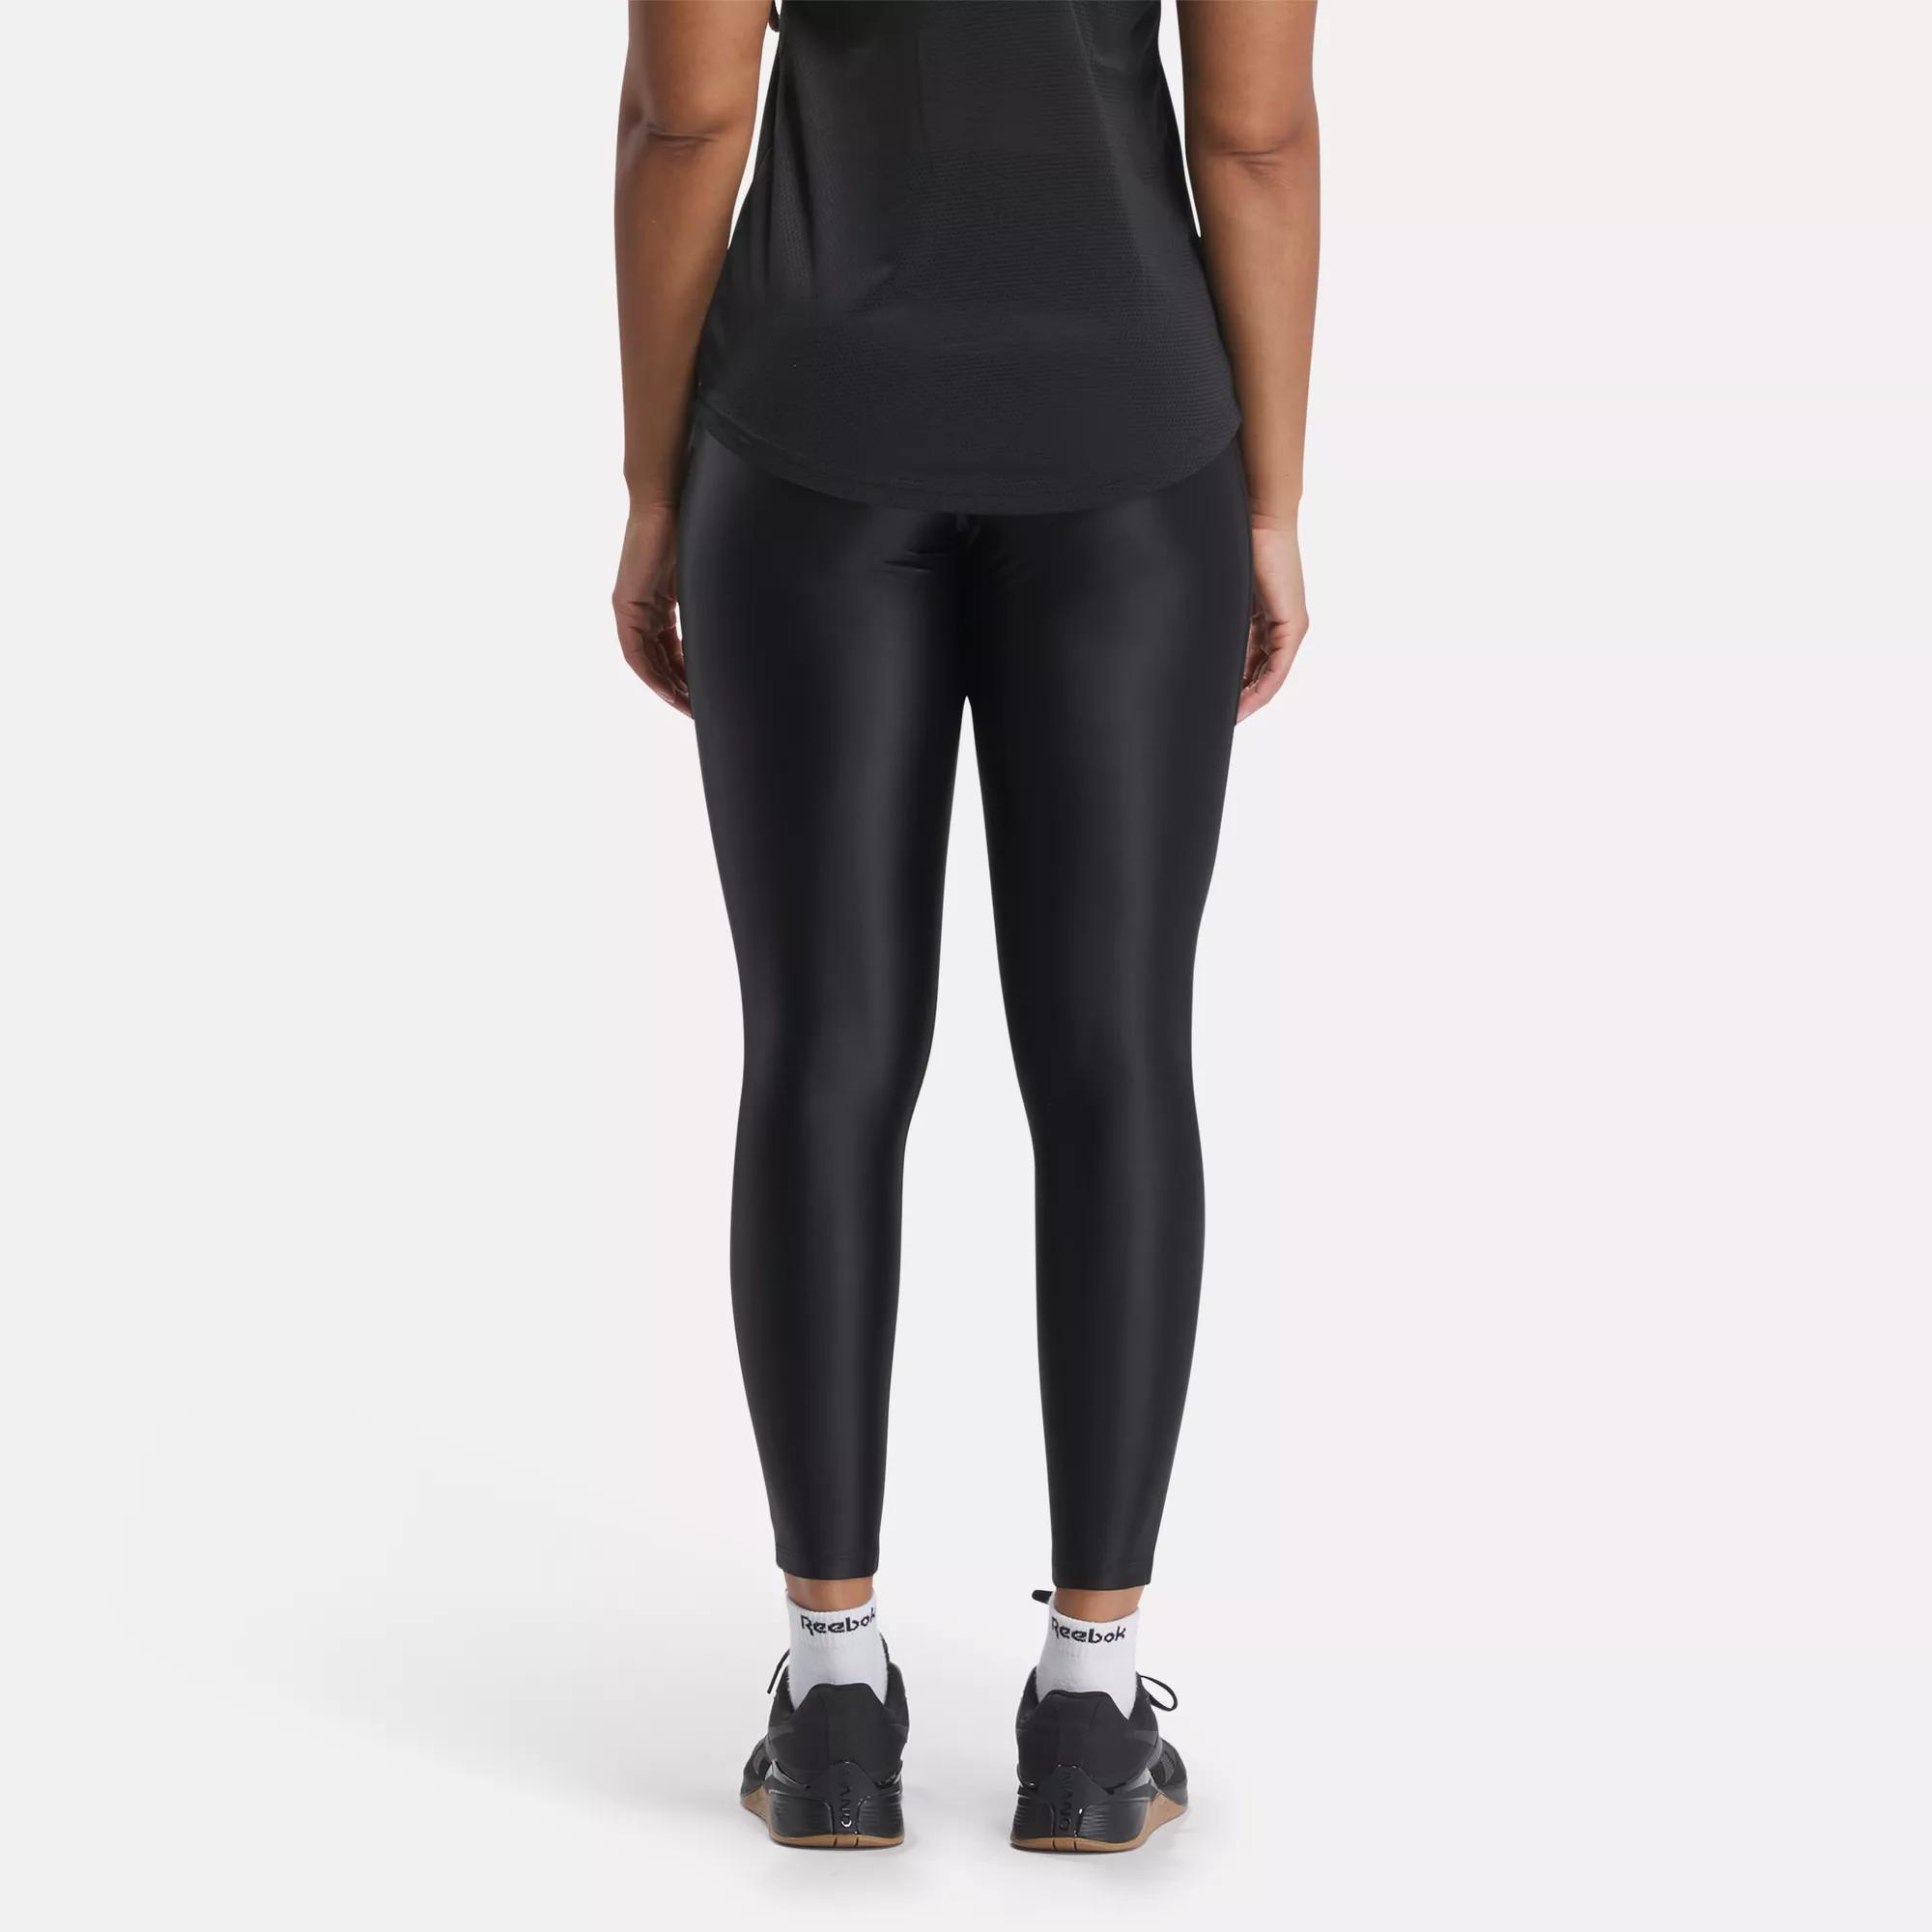 Reebok Shiny Yoga leggings black - ESD Store fashion, footwear and